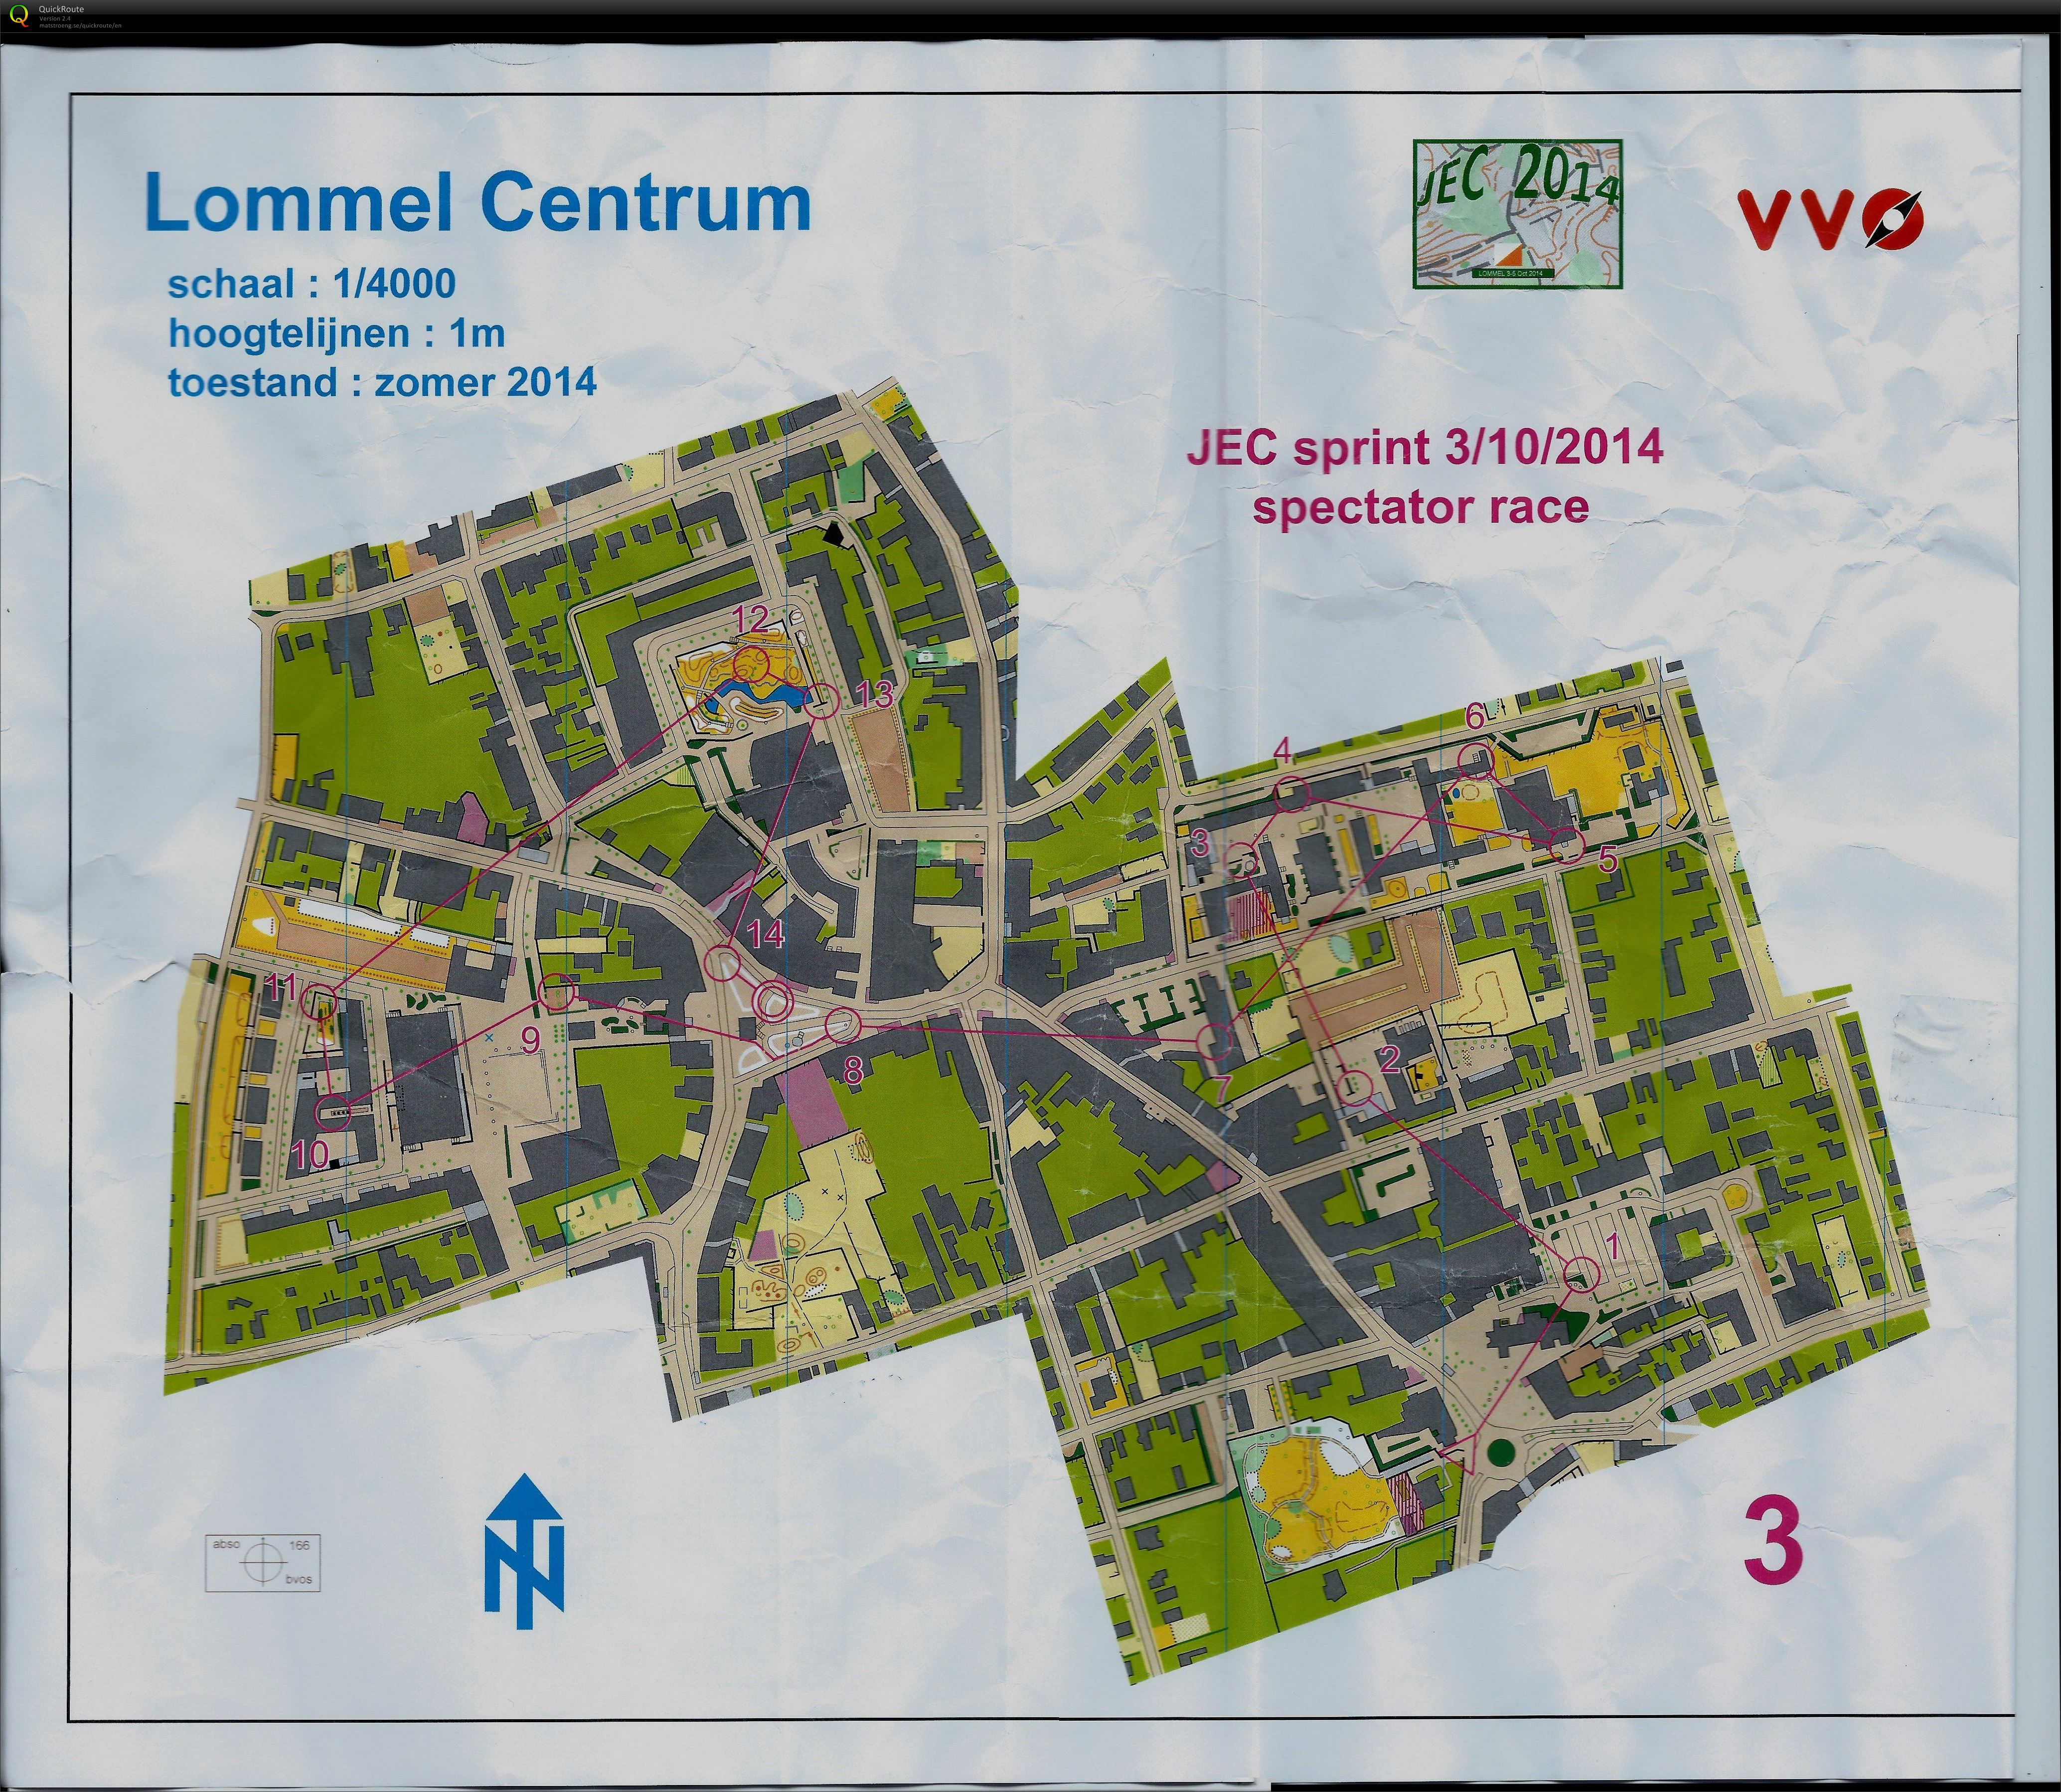 Lommel centrum (03-10-2014)